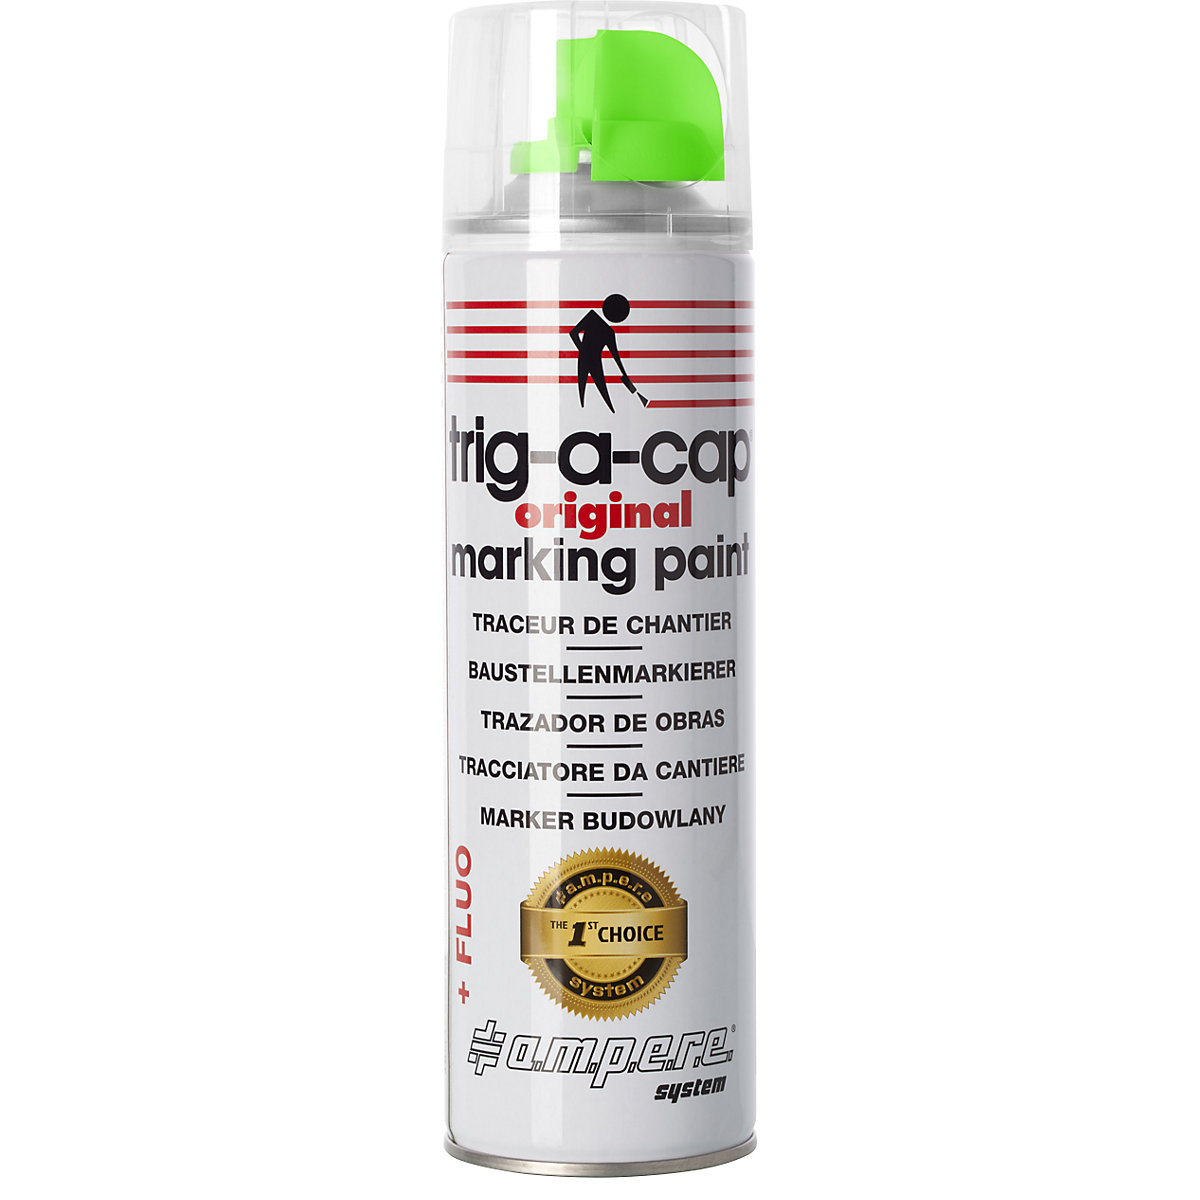 Spray de marcação para estaleiro – Ampere